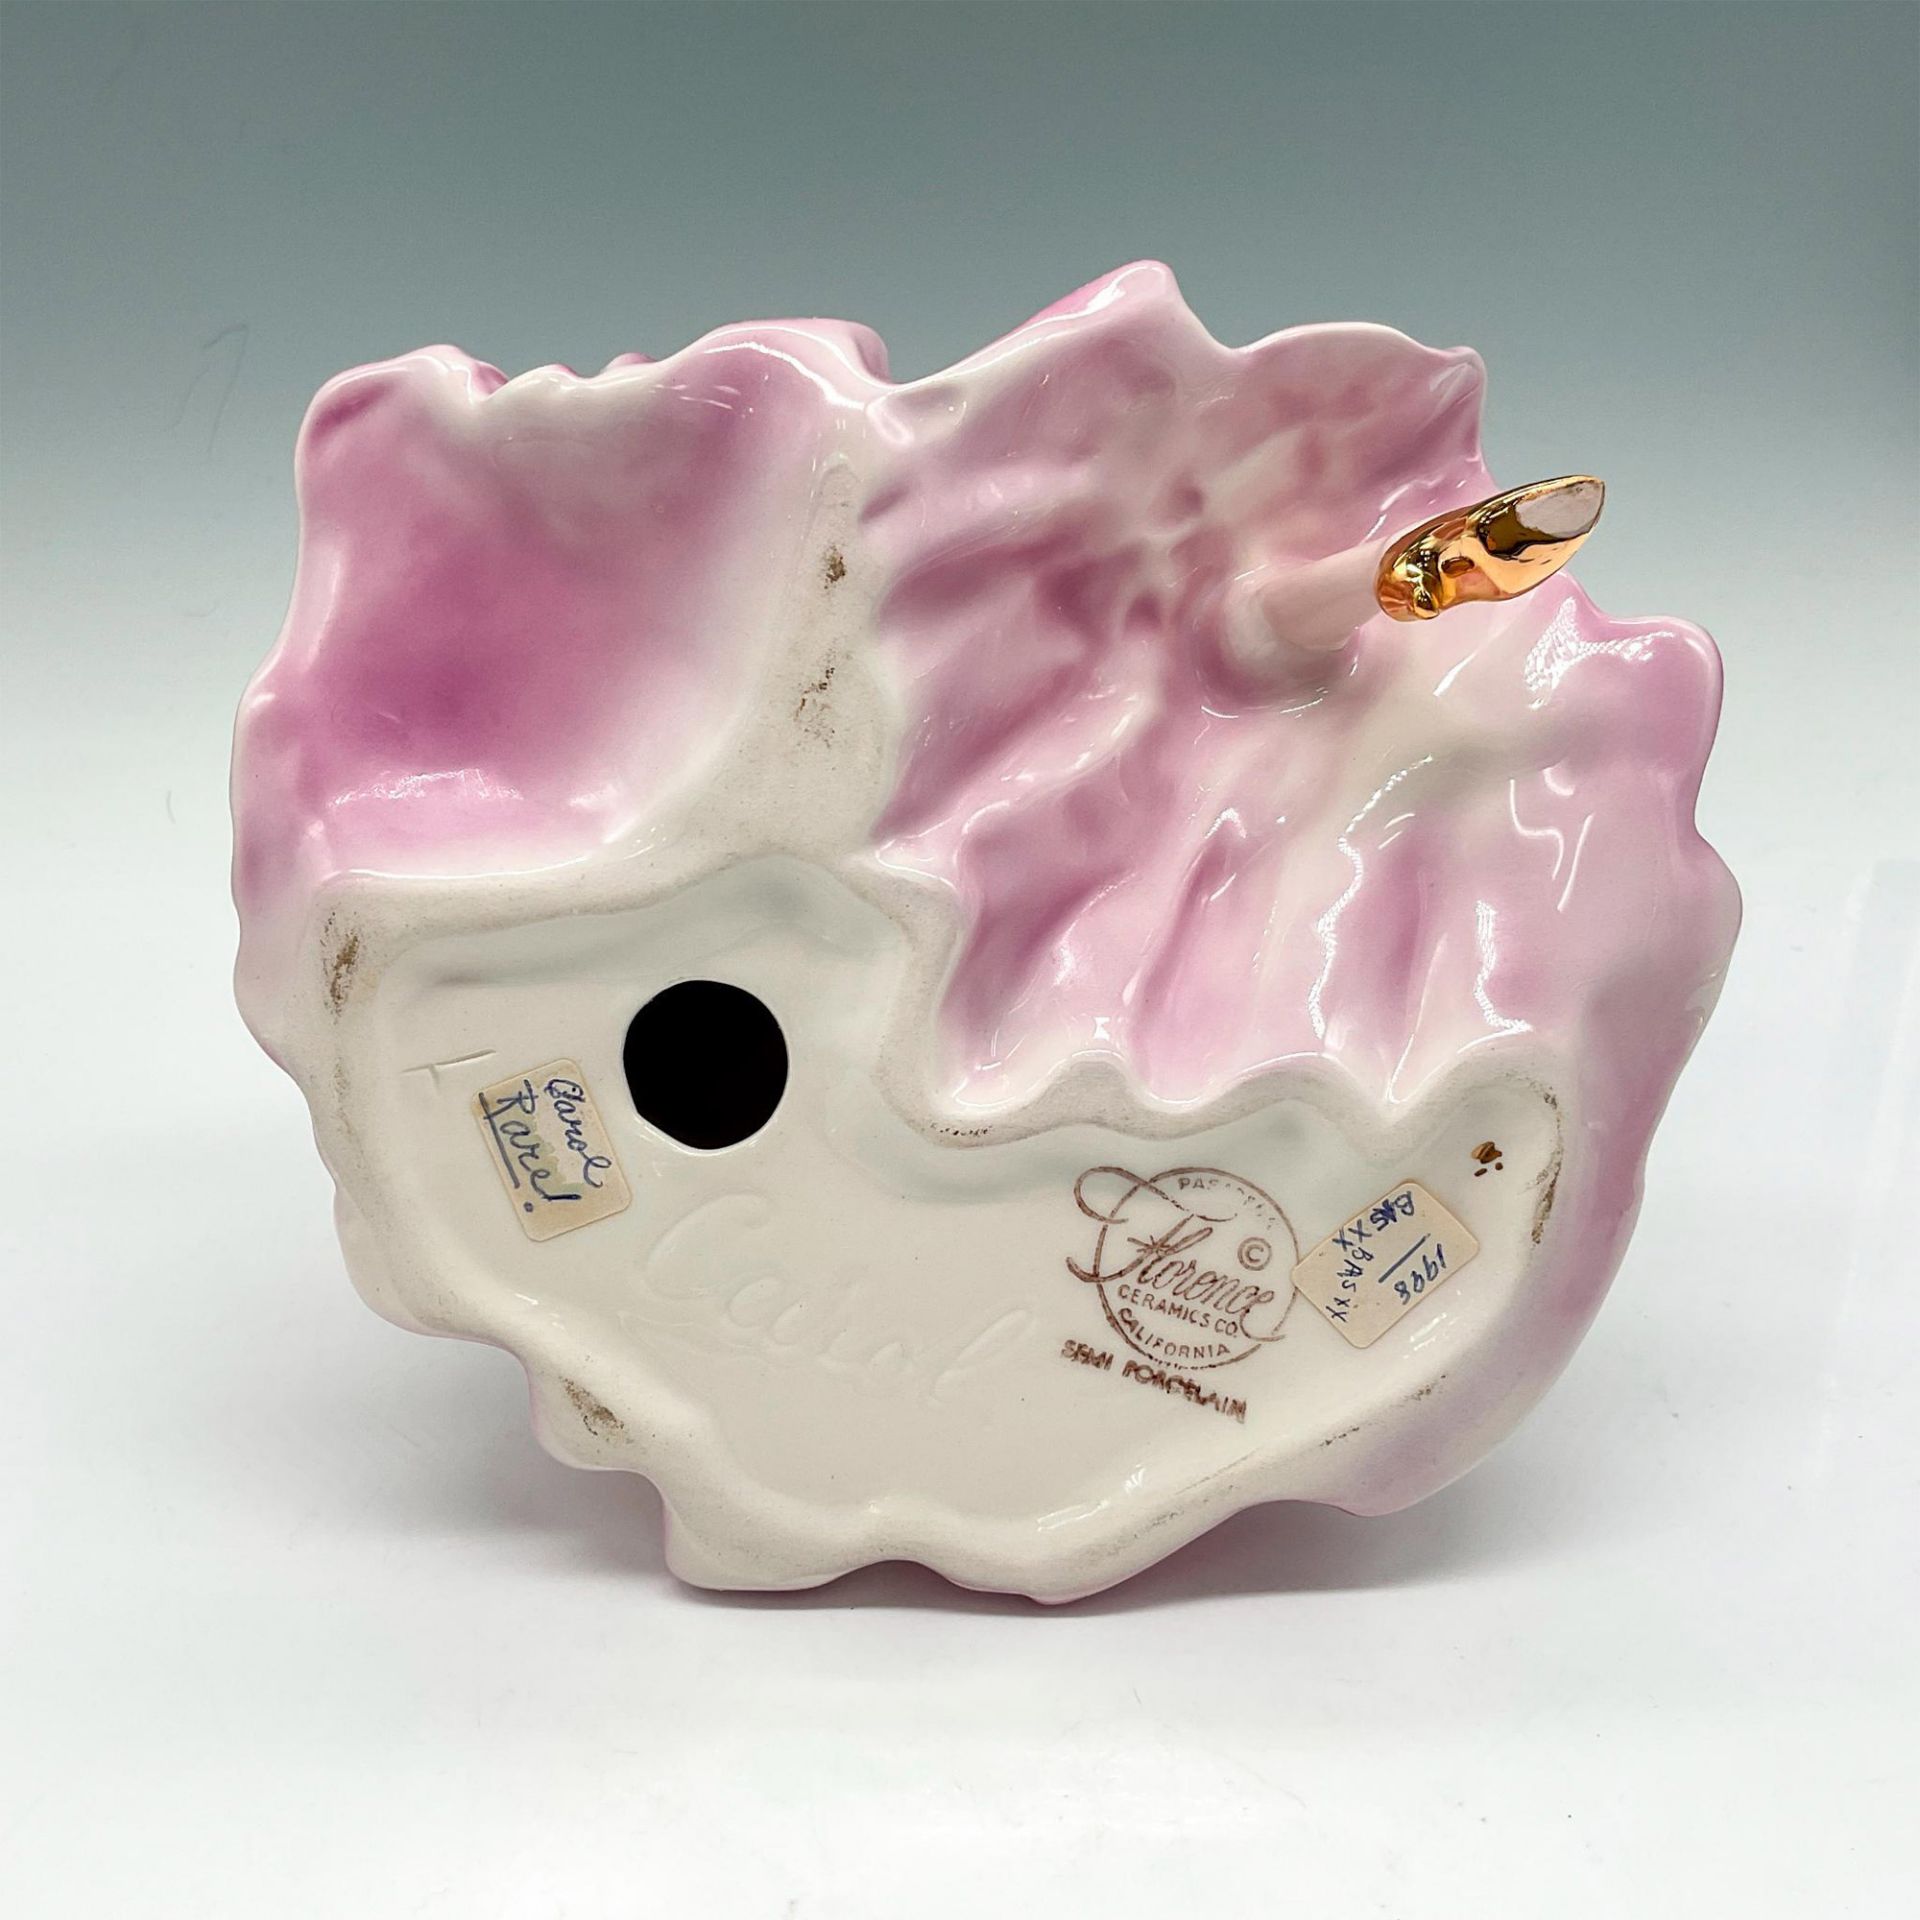 RARE Florence Ceramics Porcelain Figurine, Carol - Image 3 of 3